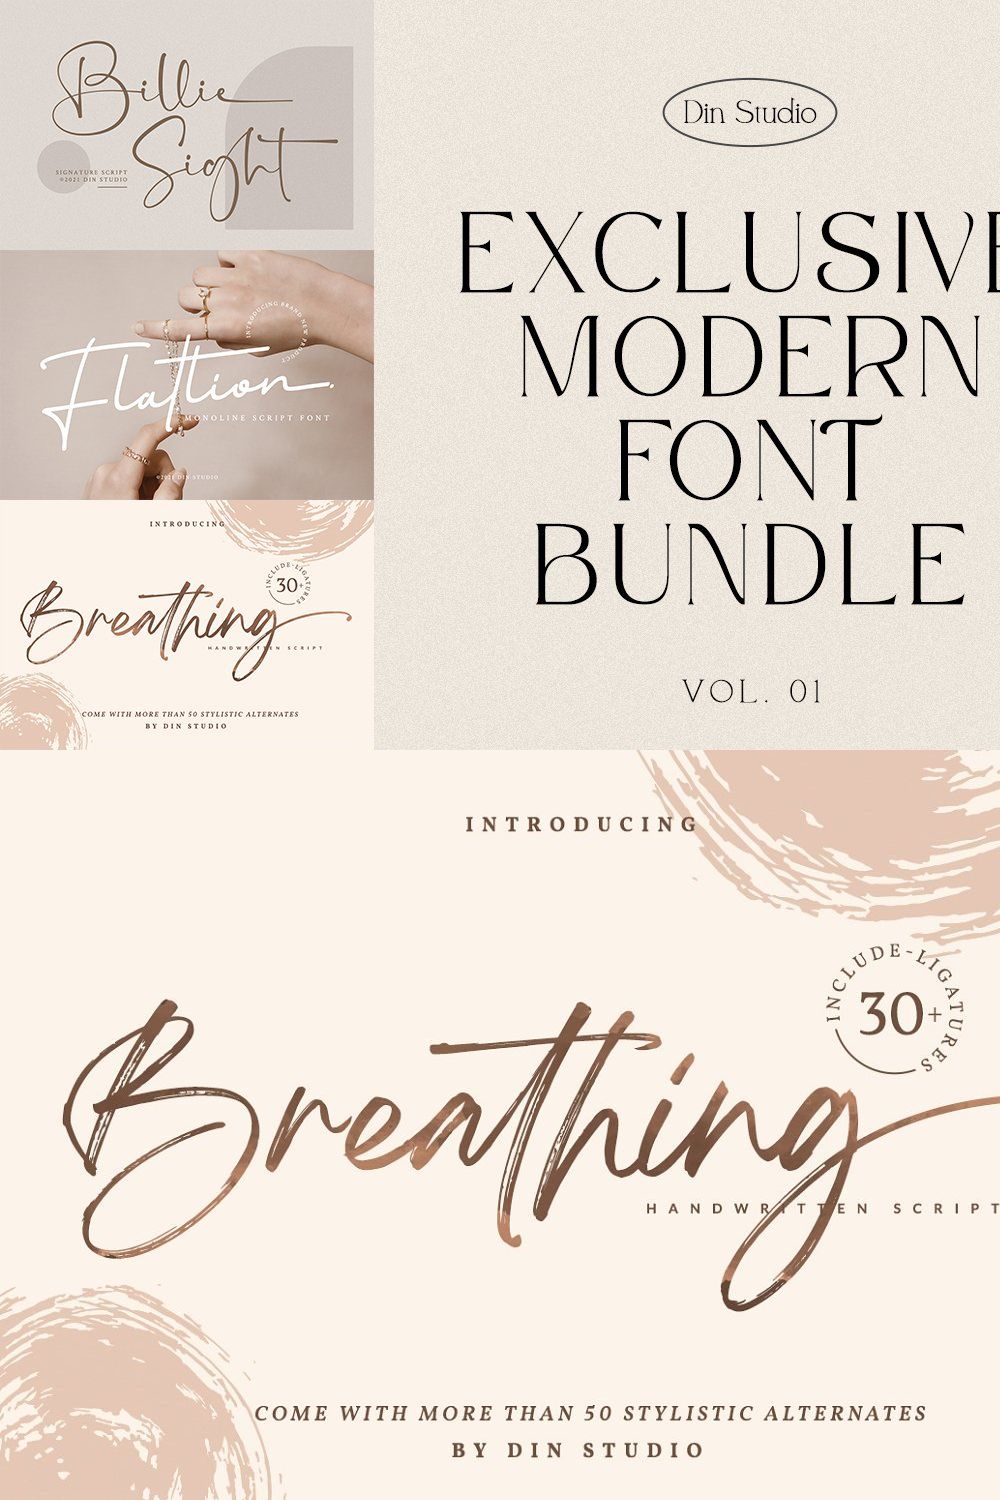 SALE - Exclusive Modern Font Bundle pinterest preview image.